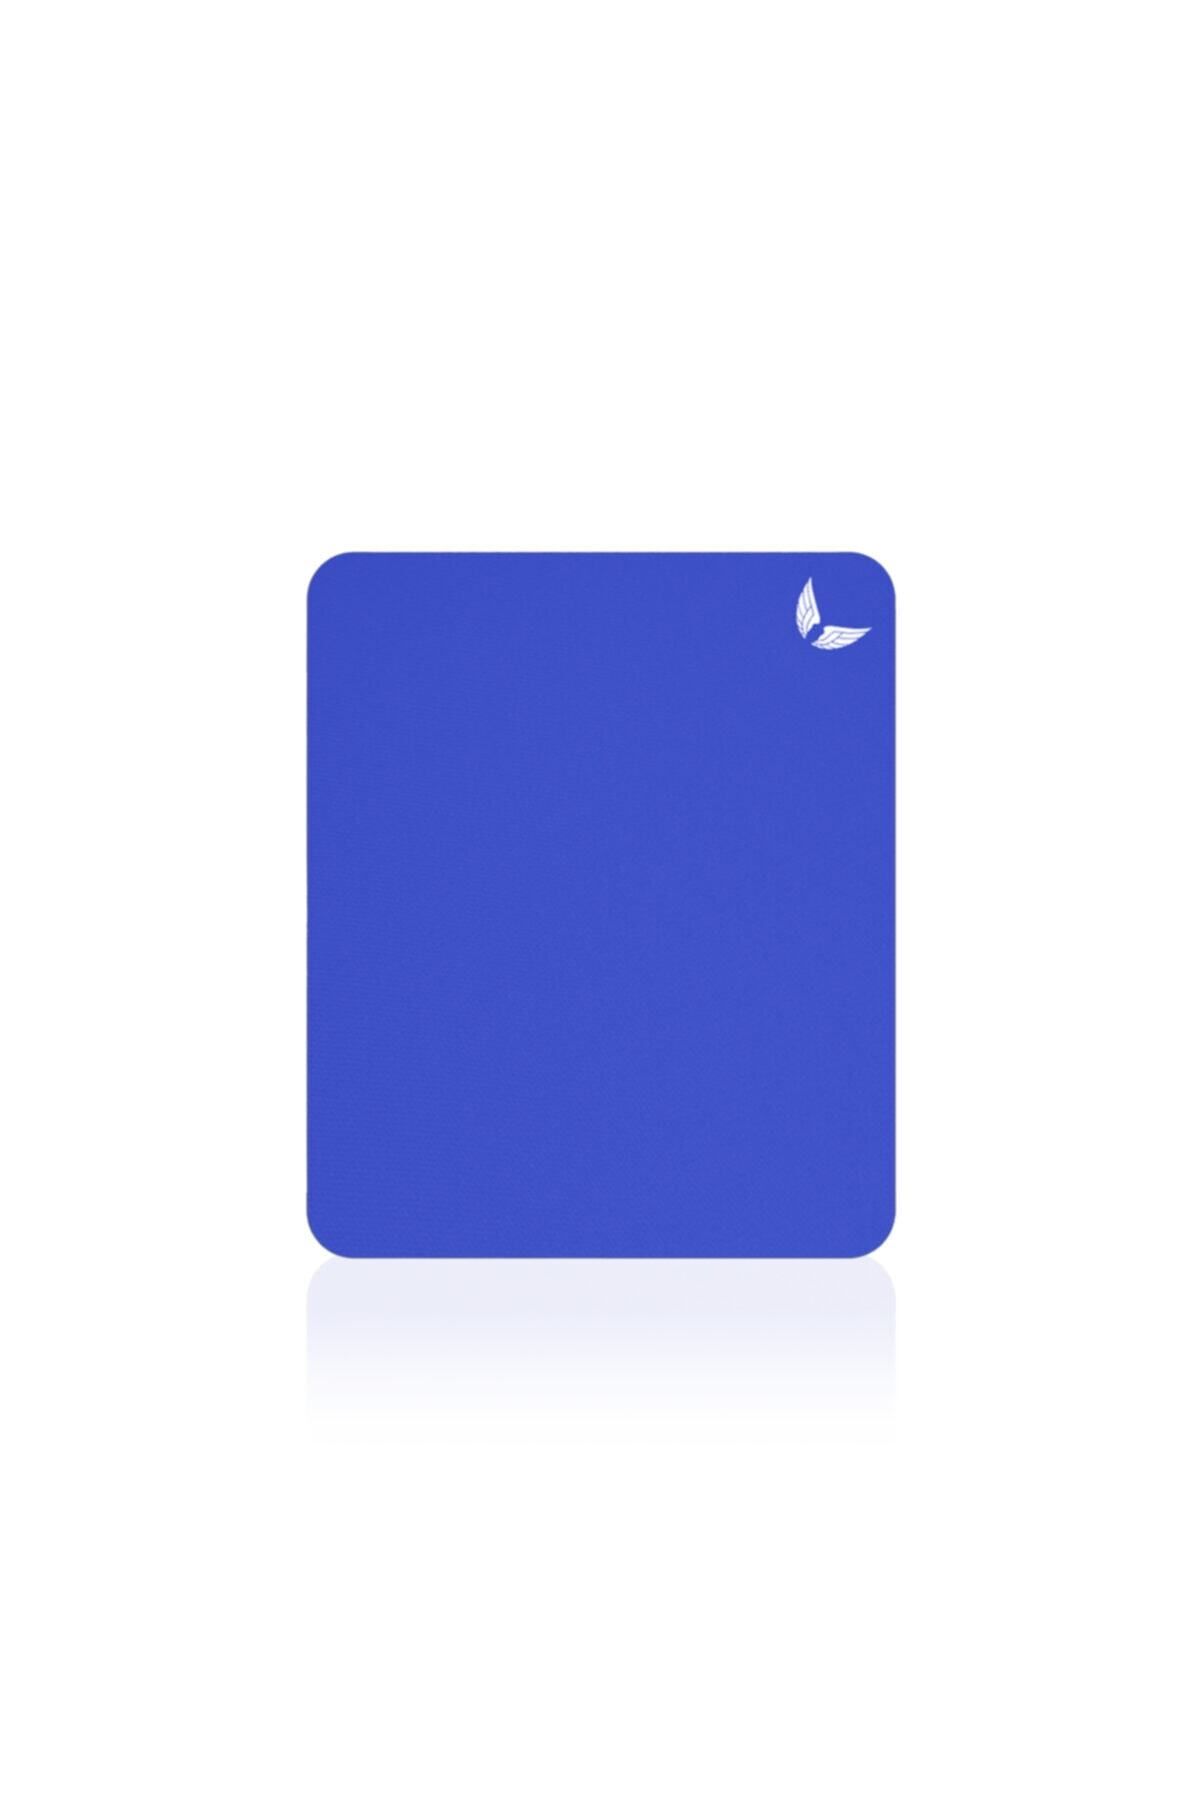 GoLite Mavi Mouse Pad 22x18 Cm - Küçük Boy Mousepad Ofis Için Klavye Fare Altlığı - Small - S